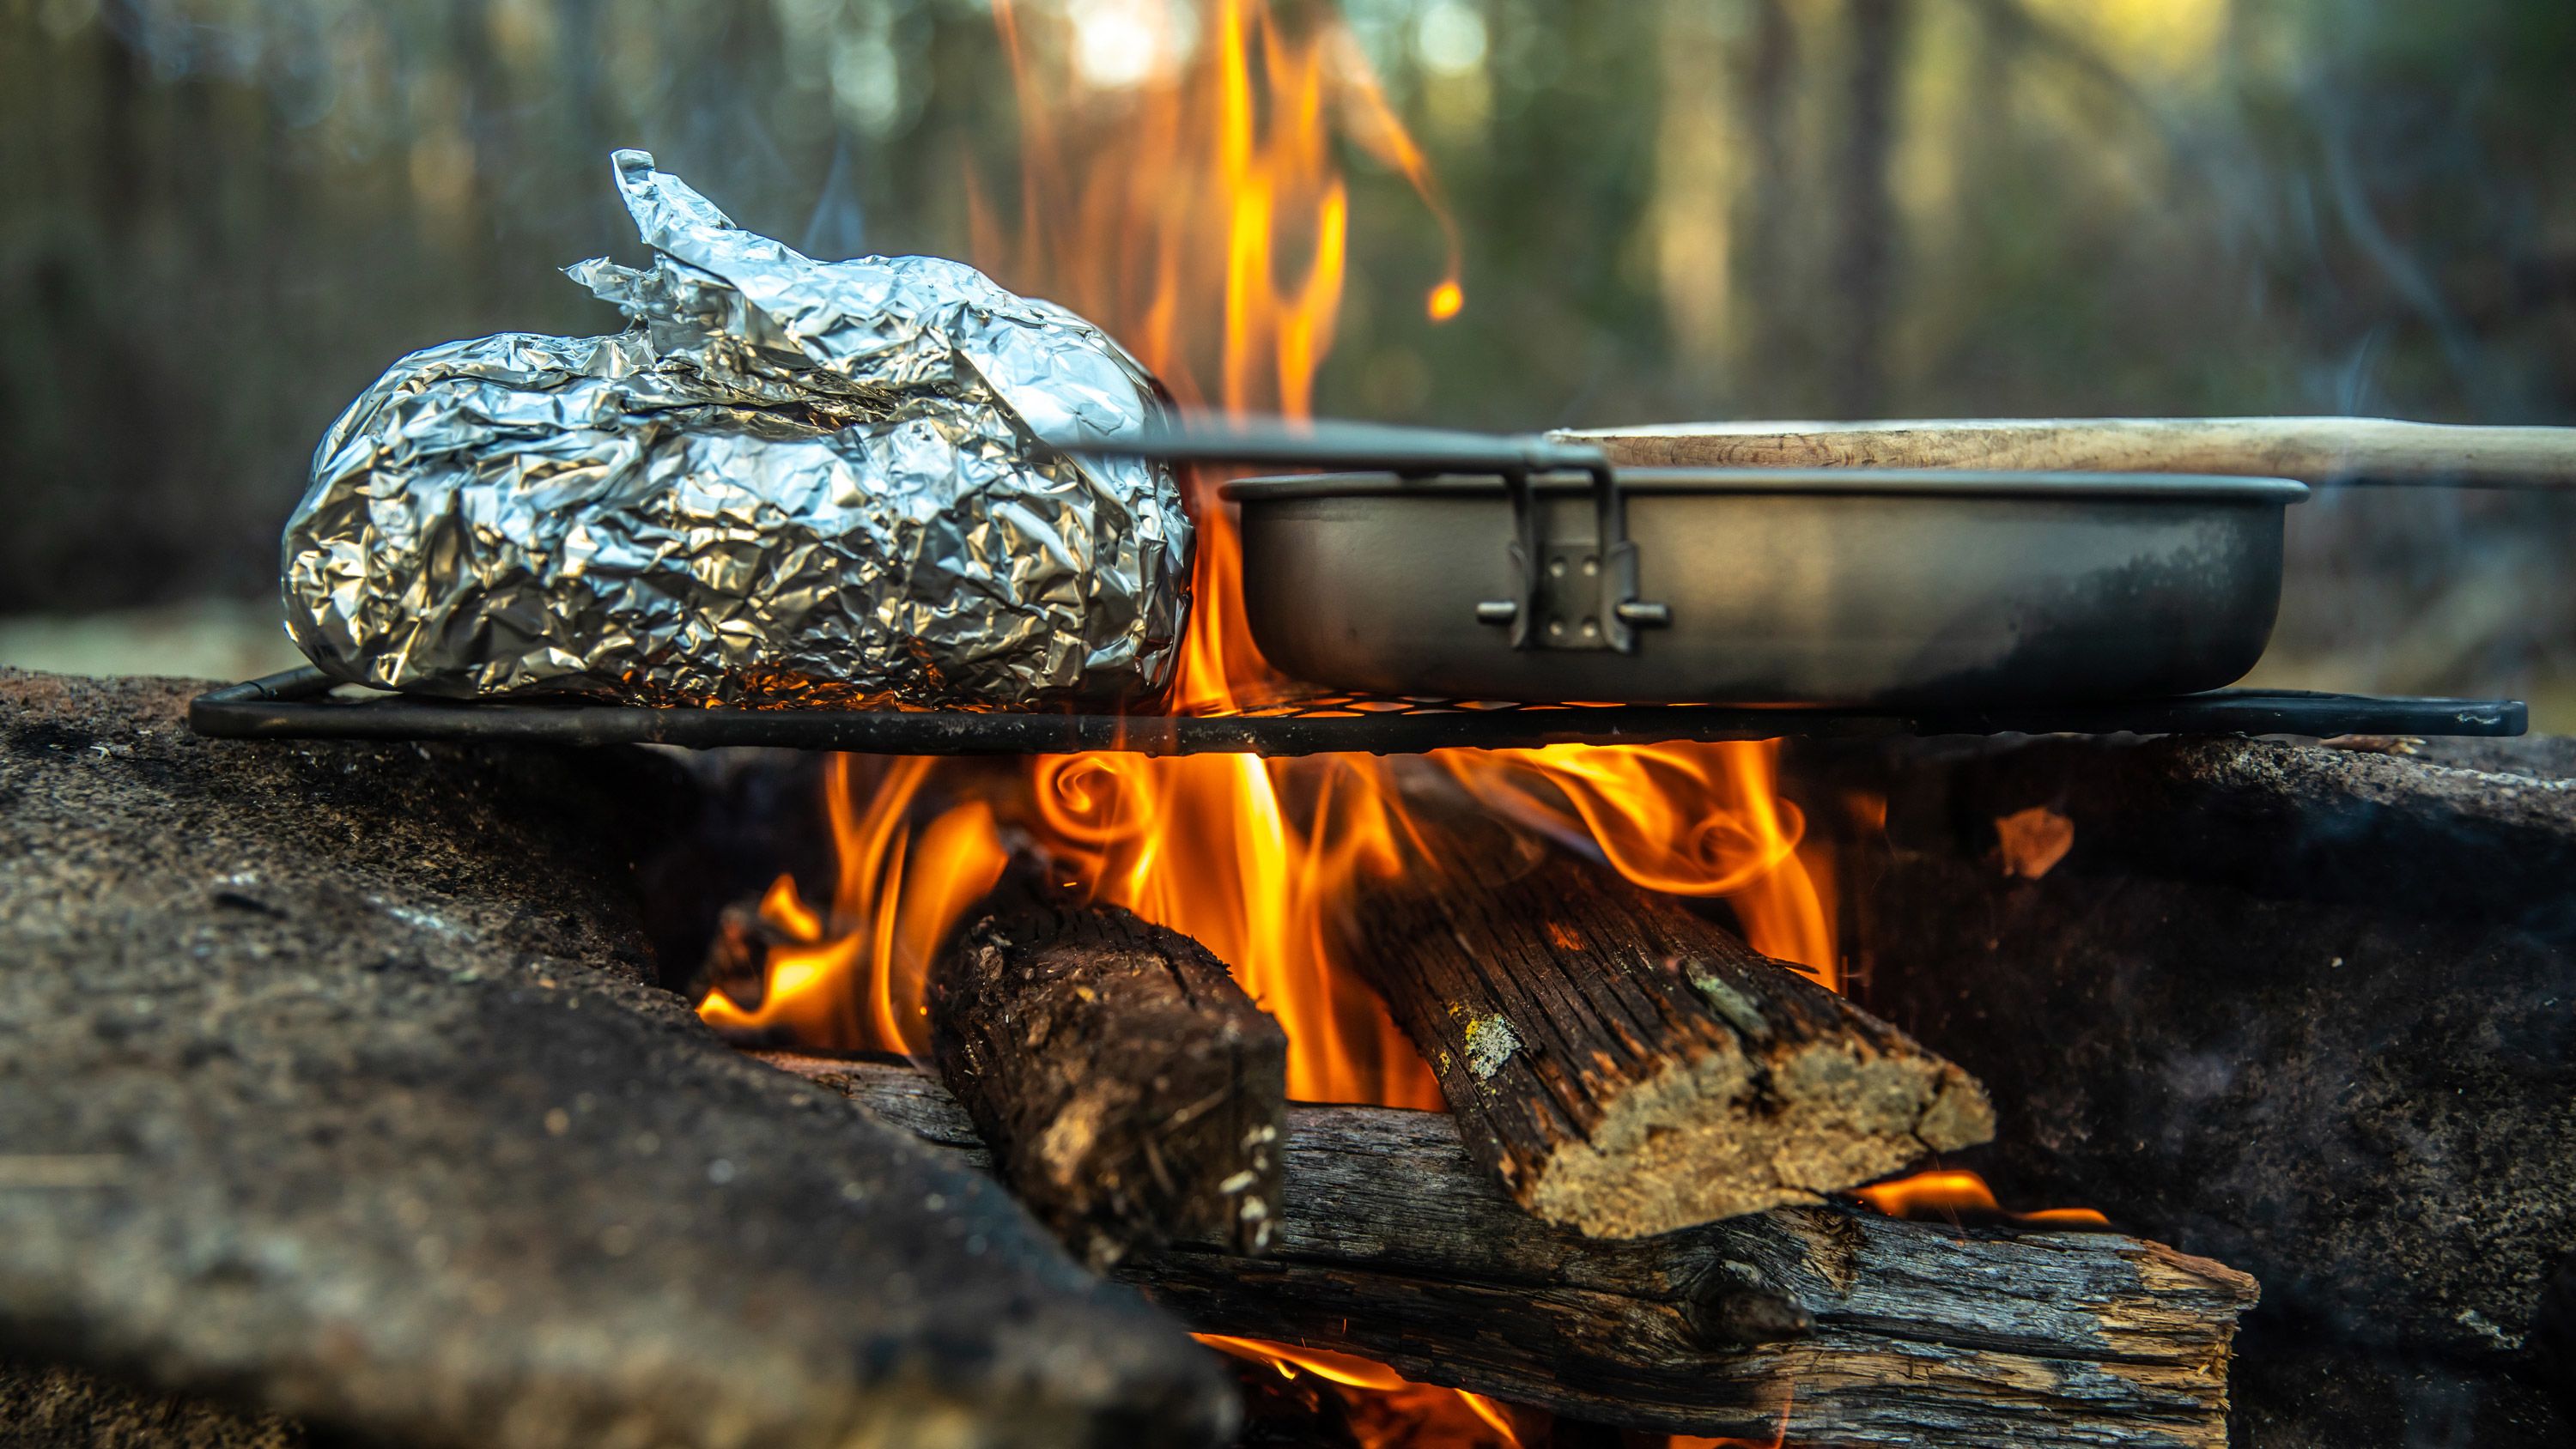 https://media.cnn.com/api/v1/images/stellar/prod/230627220852-04-summer-campfire-cooking-grill-recipe-wellness-restricted.jpg?c=original